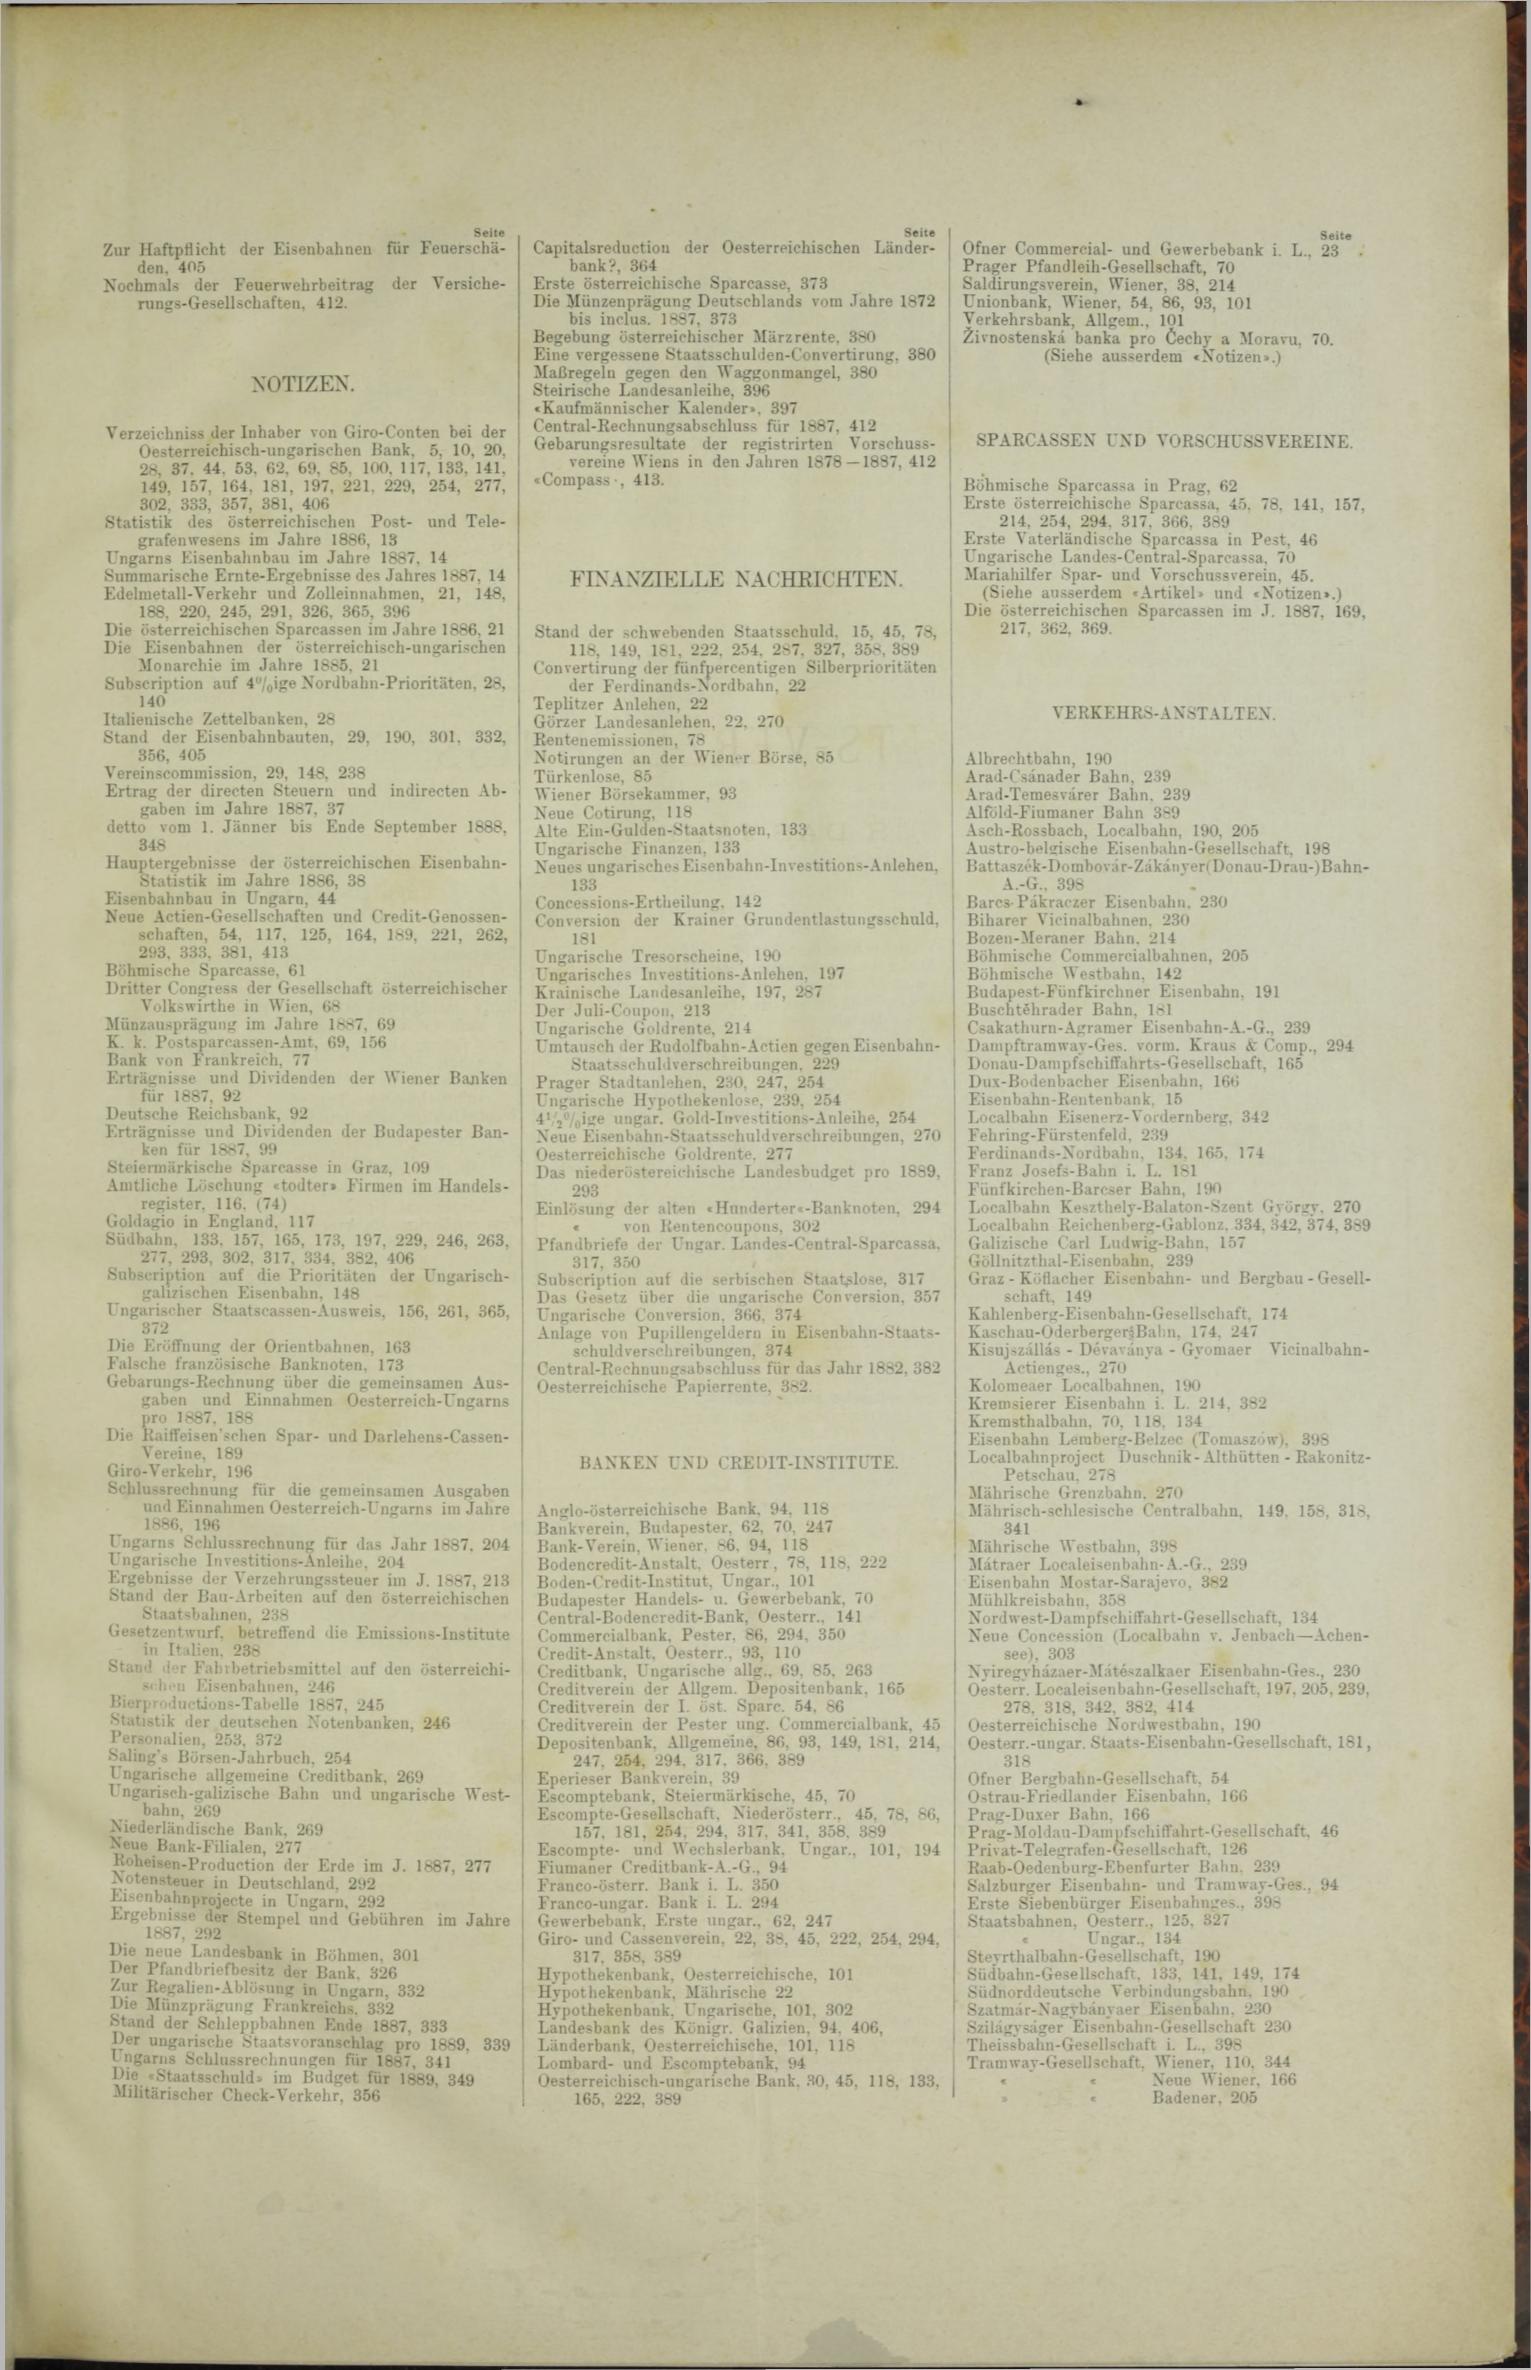 Der Tresor 26.01.1888 - Seite 11